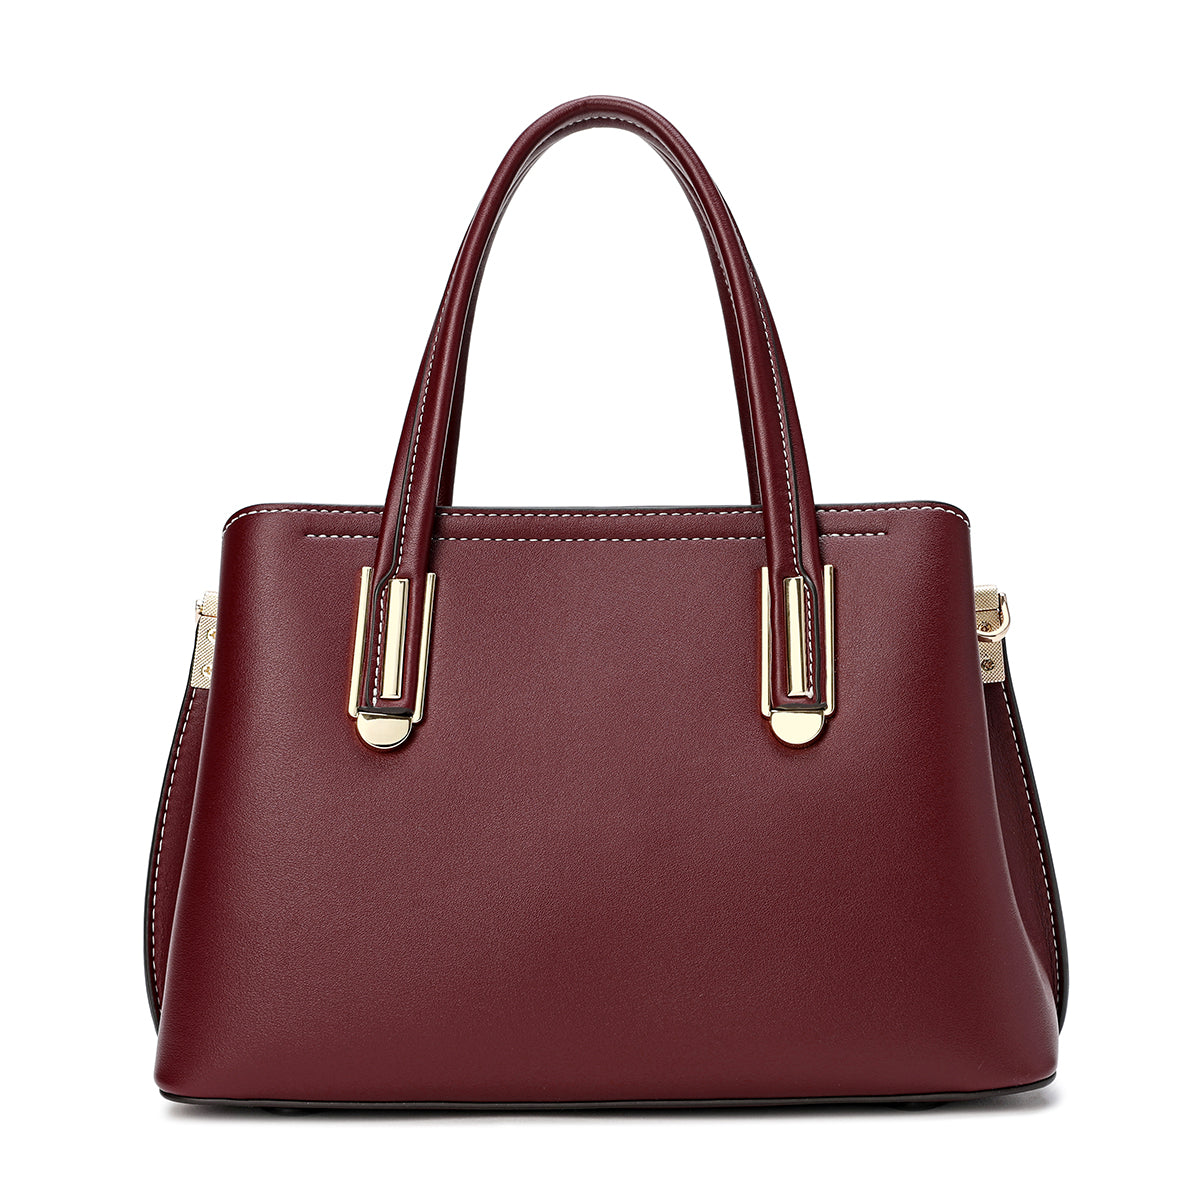 Handbag with shoulder strap, width 27 cm, maroon or blue